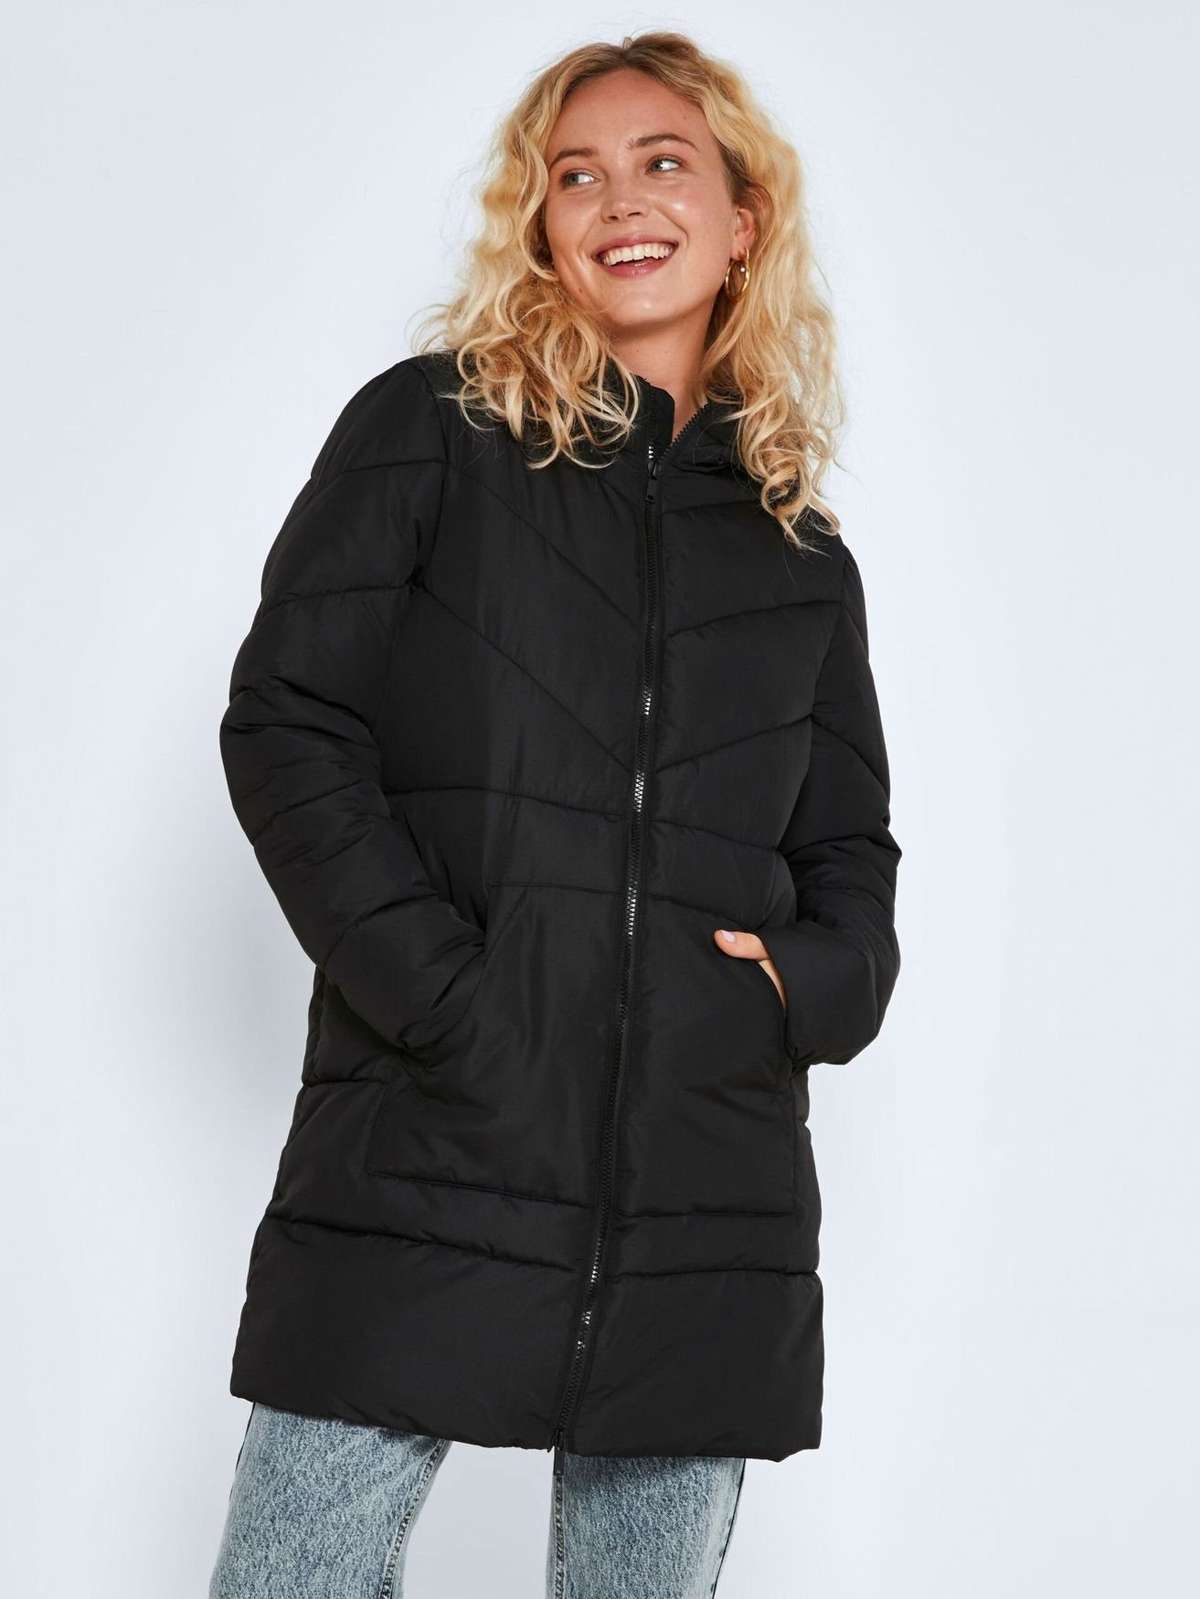 Зимняя куртка длинная стеганая куртка NMDALCON 4272 черного цвета